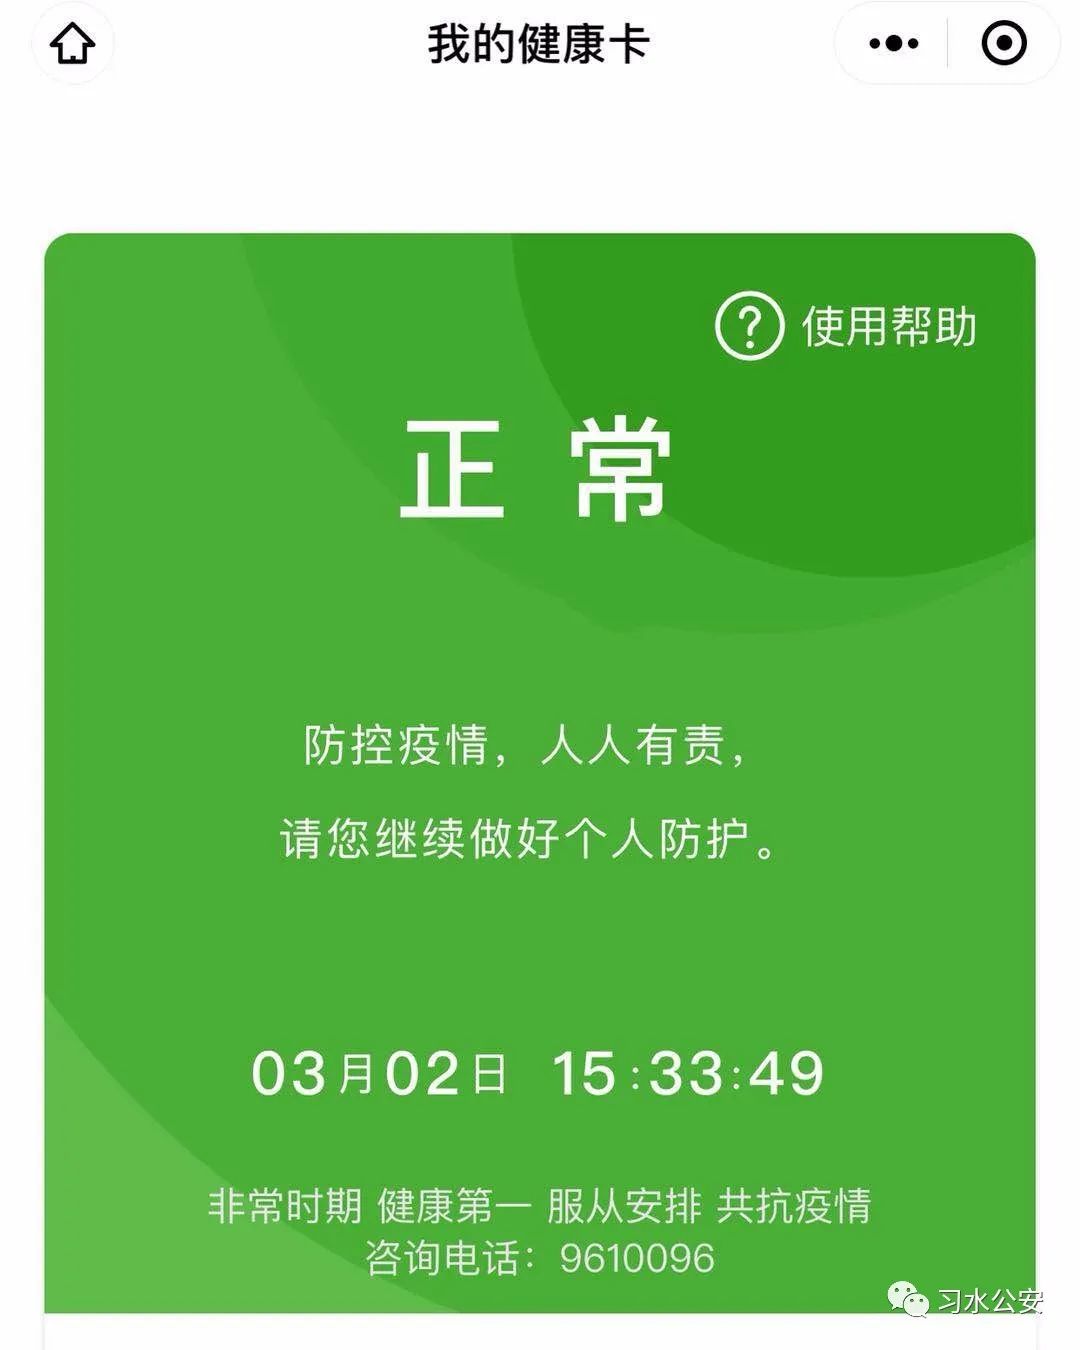 "贵州健康码"正式上线,快来扫码生成你的健康卡吧!